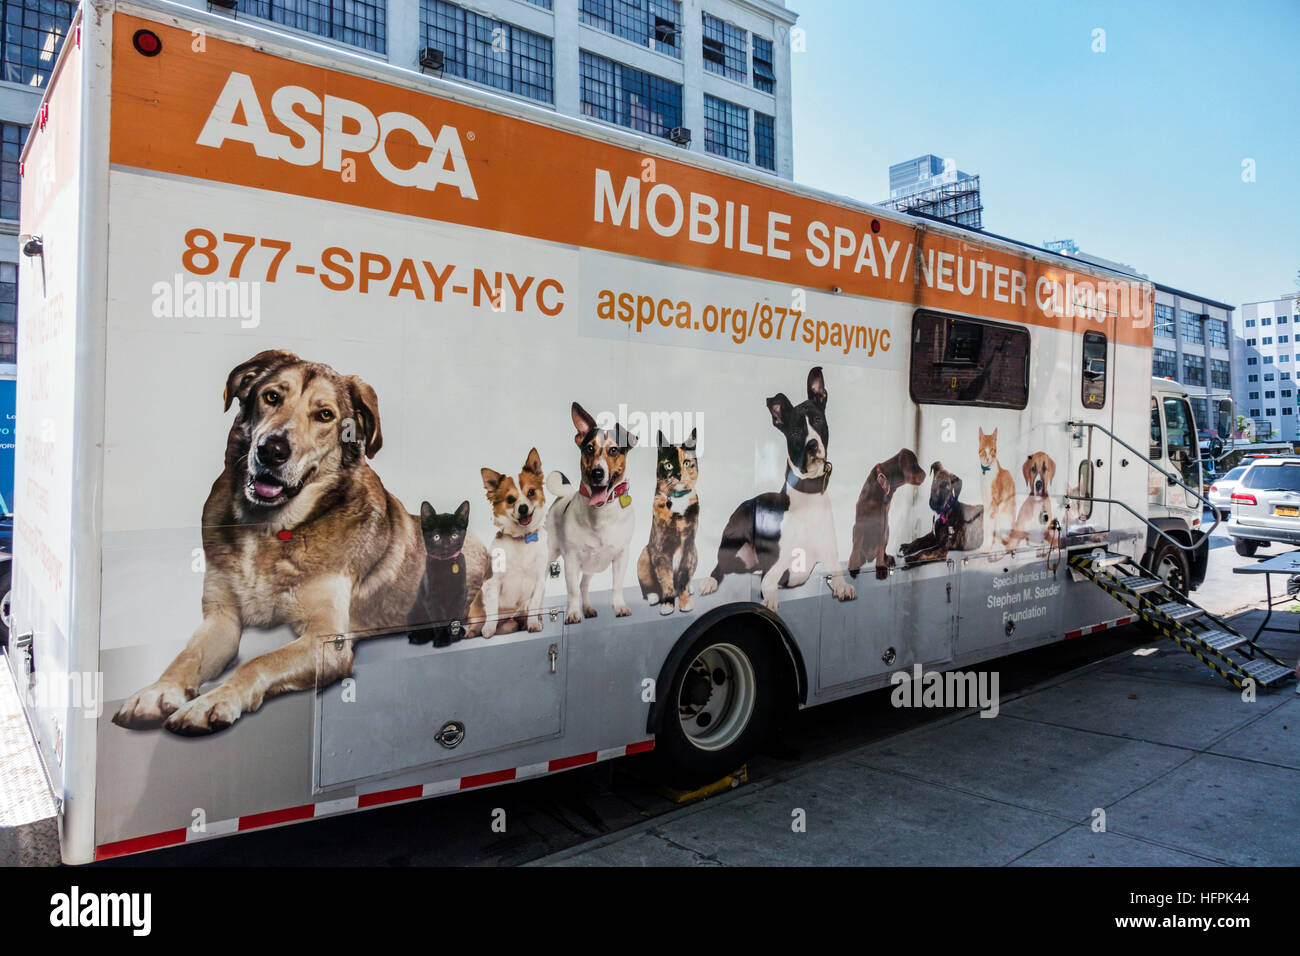 New York City,NY NYC Long Island City,parked vehicle,ASPCA,non-profit organization,mobile spay/neuter clinic,dog,cat,pet,veterinary care,NY160722004 Stock Photo